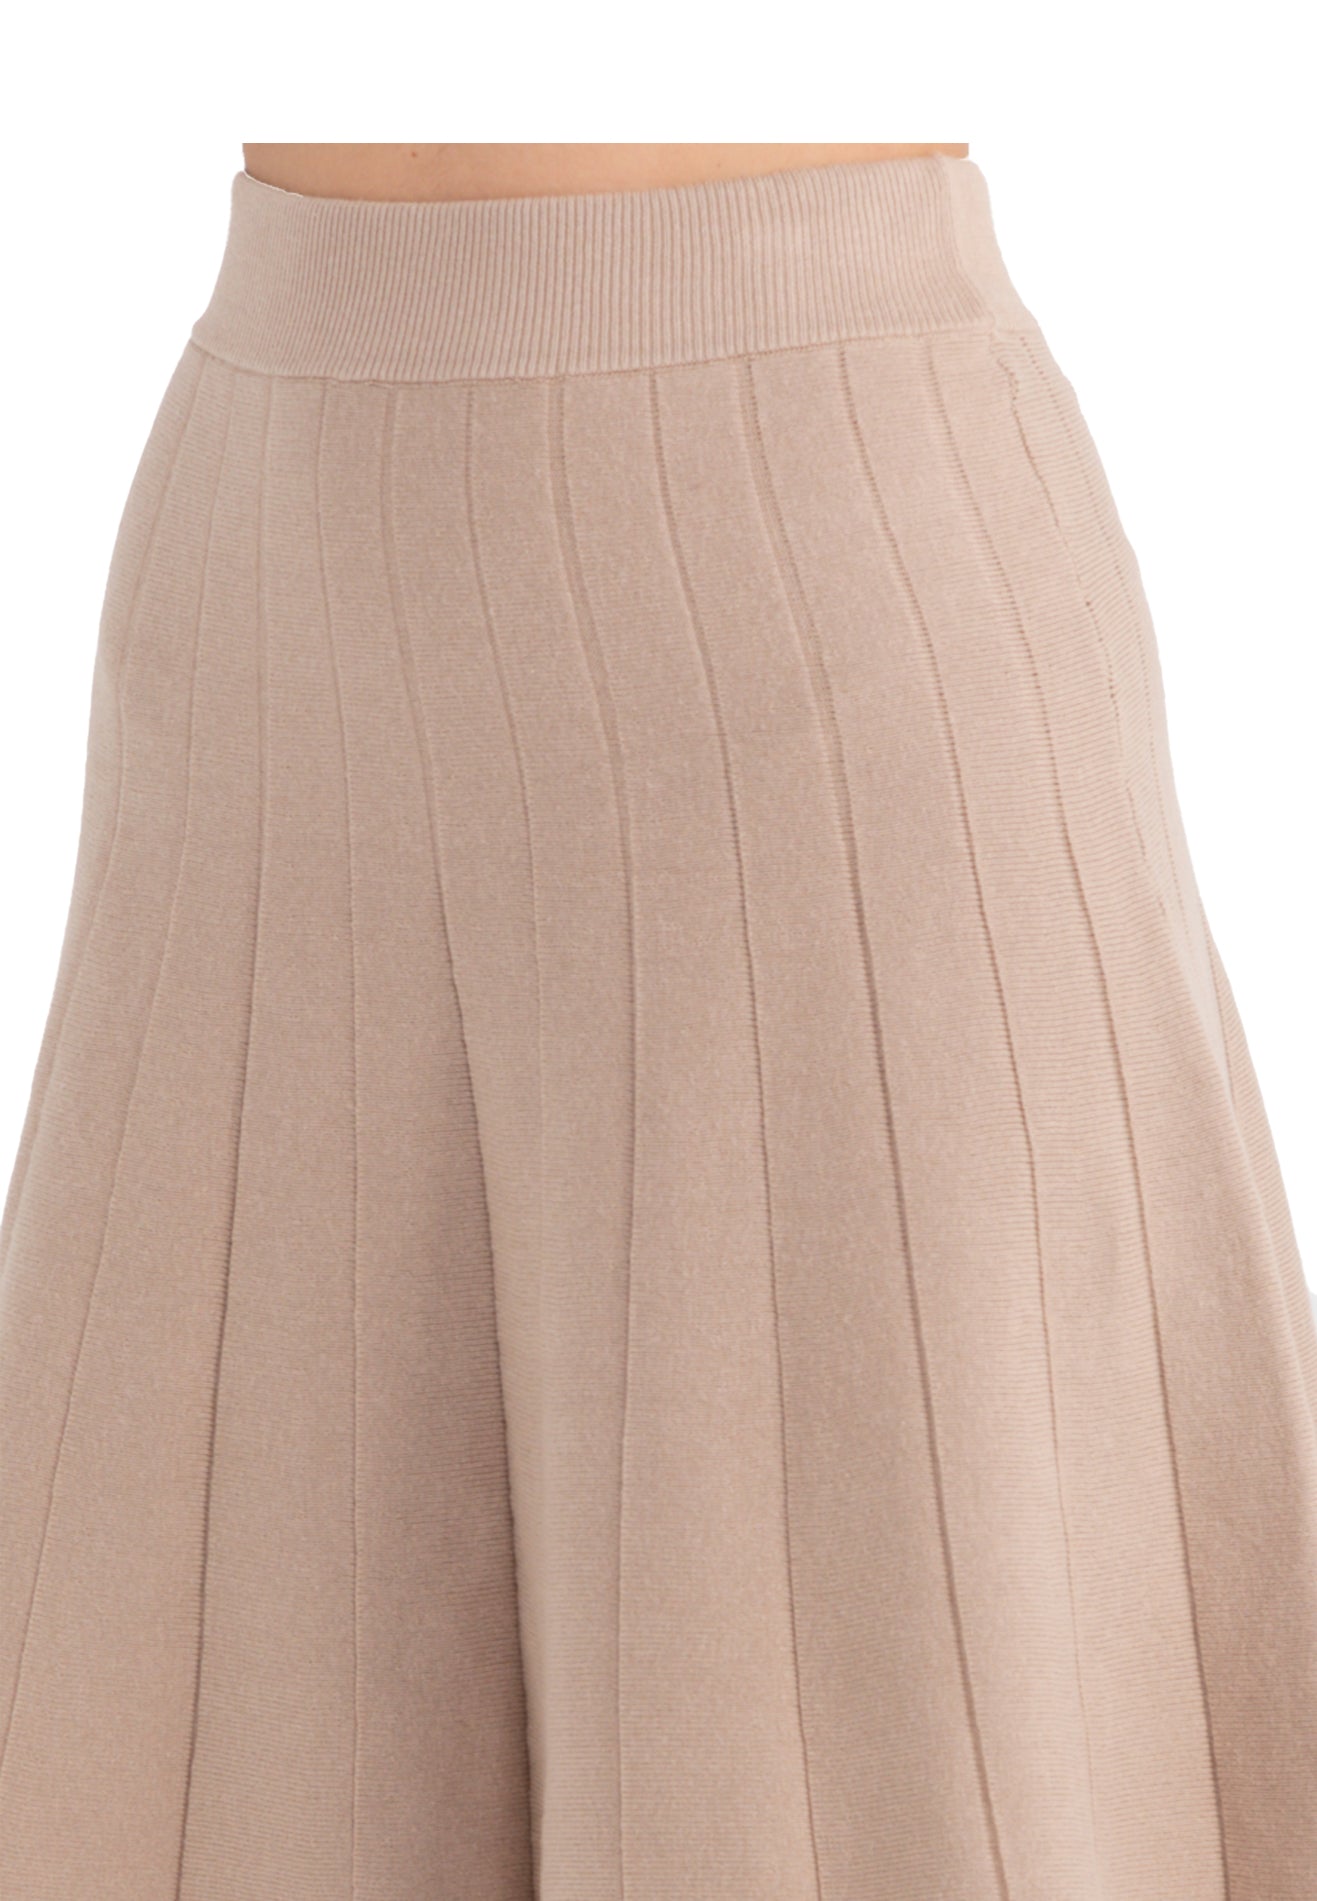 ELLE Apparel Plain Knitted A-Line Skirt